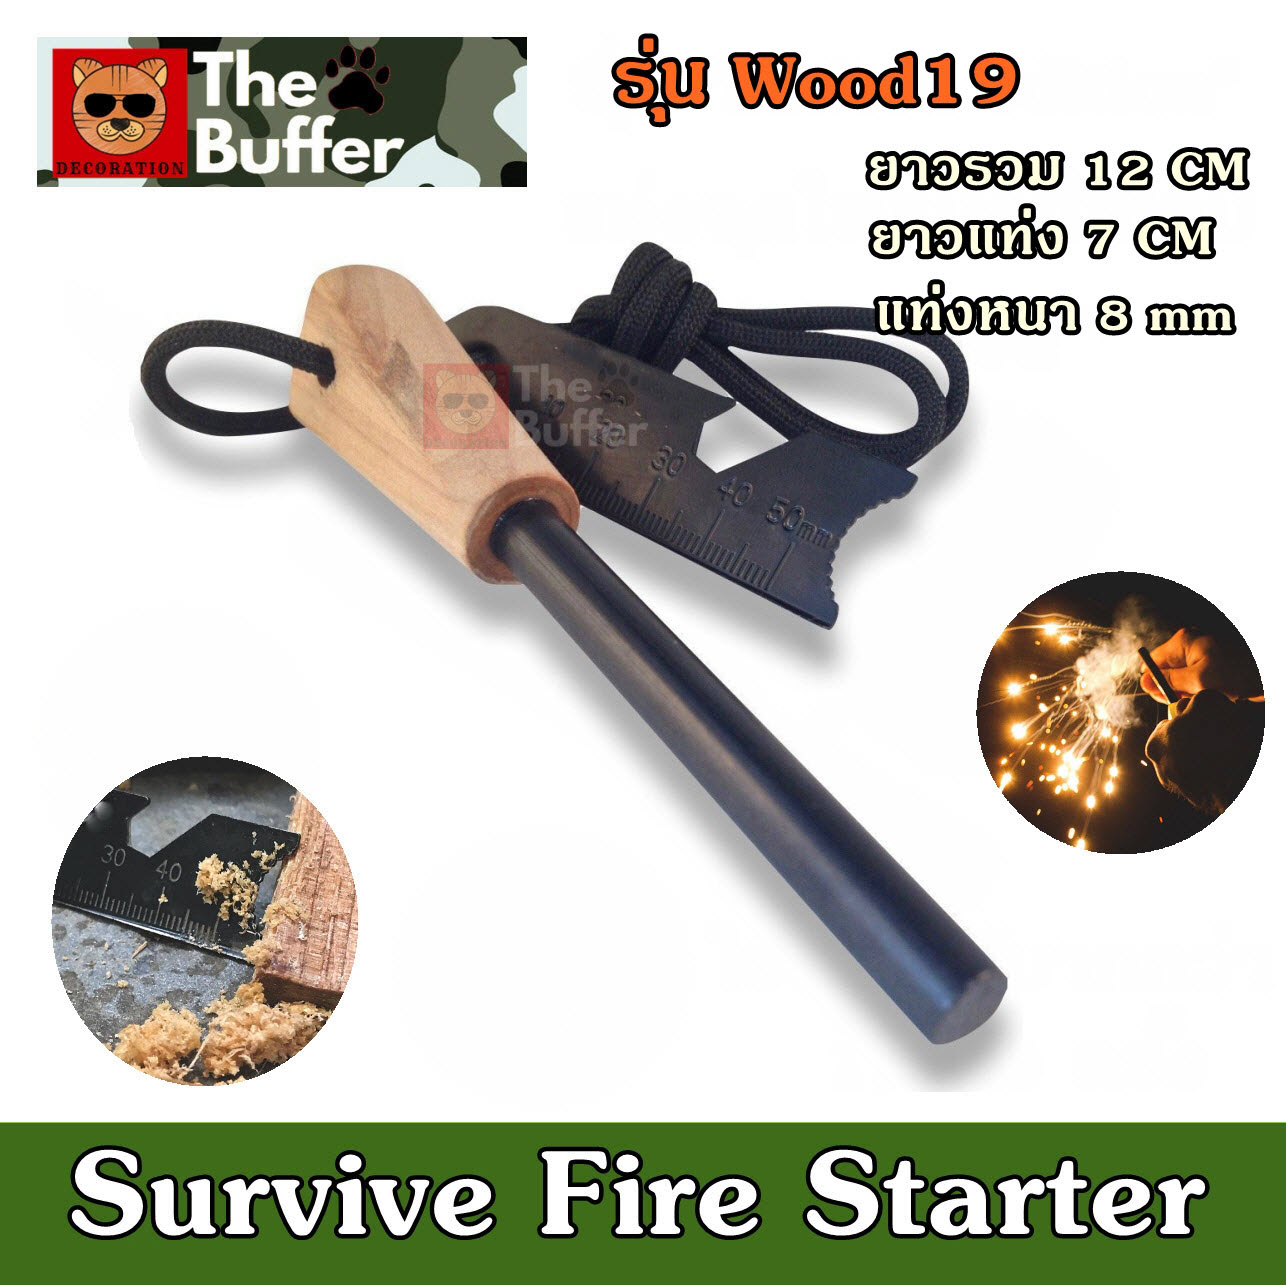 แท่งจุดไฟ รุ่น Wood19  แท่ง magnesium ที่จุดไฟอเนกประสงค์ ไม้ขีดไฟเดินป่า ที่จุดไฟในป่า แท่งแมกนีเซียม แท่งจุดไฟฉุกเฉิน ไม้ขีดไฟตั้งแคมป์  Flint Striker Fire Starter Outdoor Camping Survival Magnesium Flint Scraper Stone Fire Starter